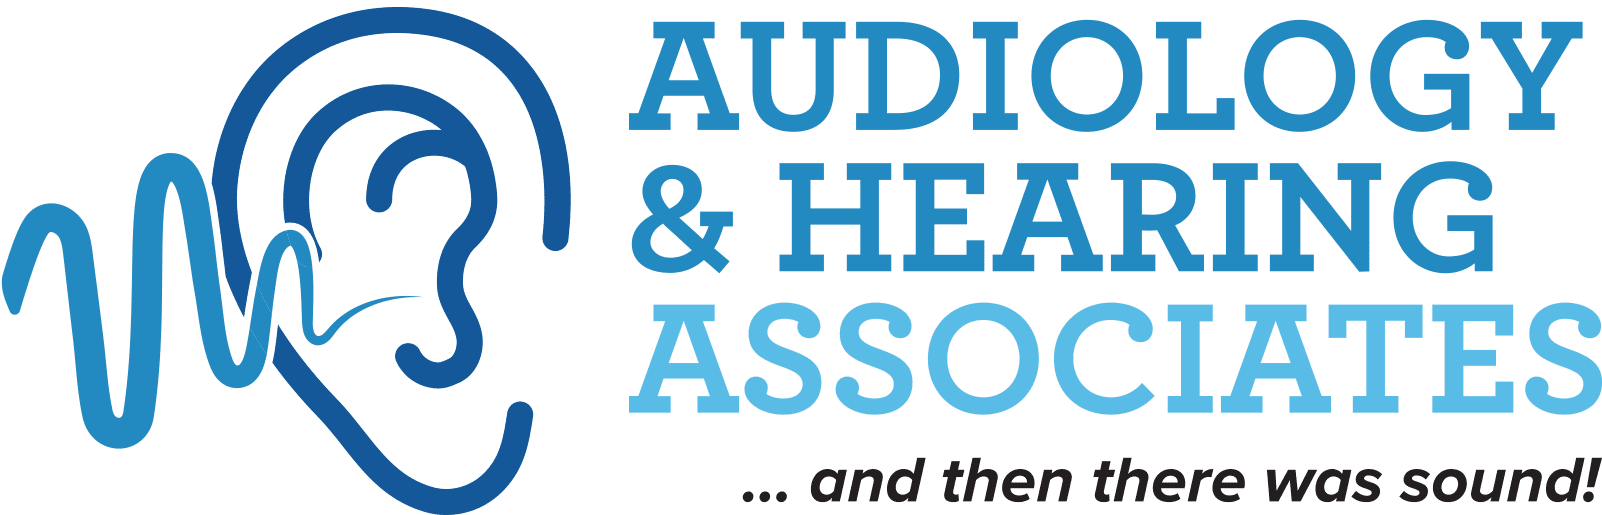 Audiology & Hearing Associates | Warren, OH